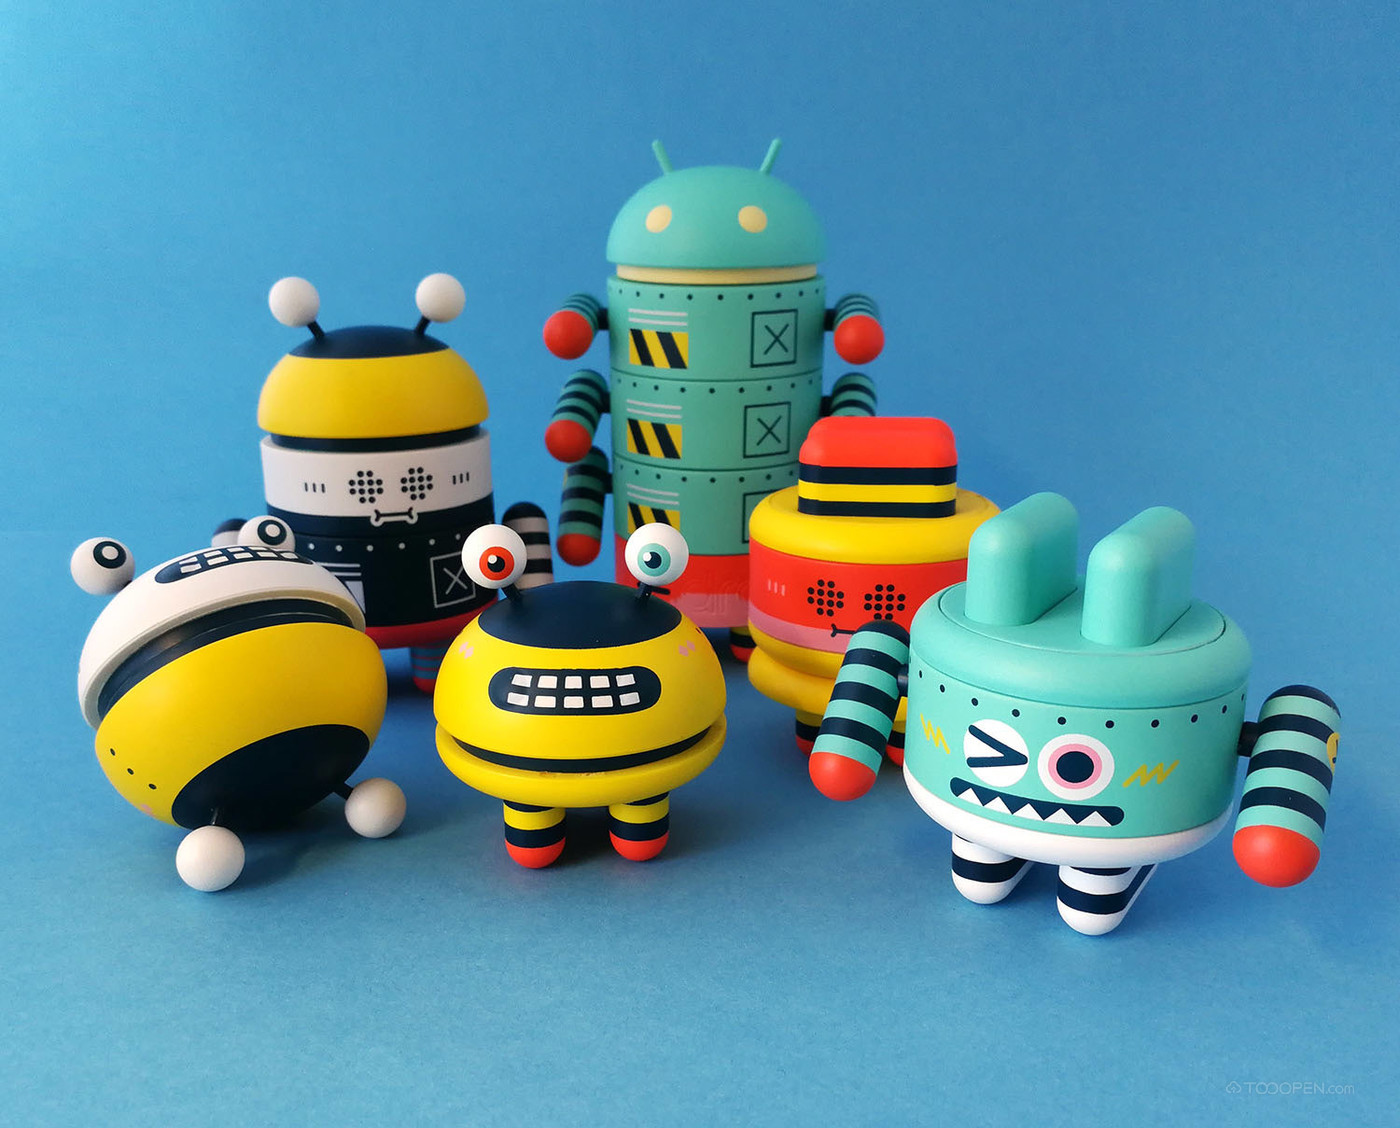 安卓机器人玩偶玩具设计作品欣赏-01